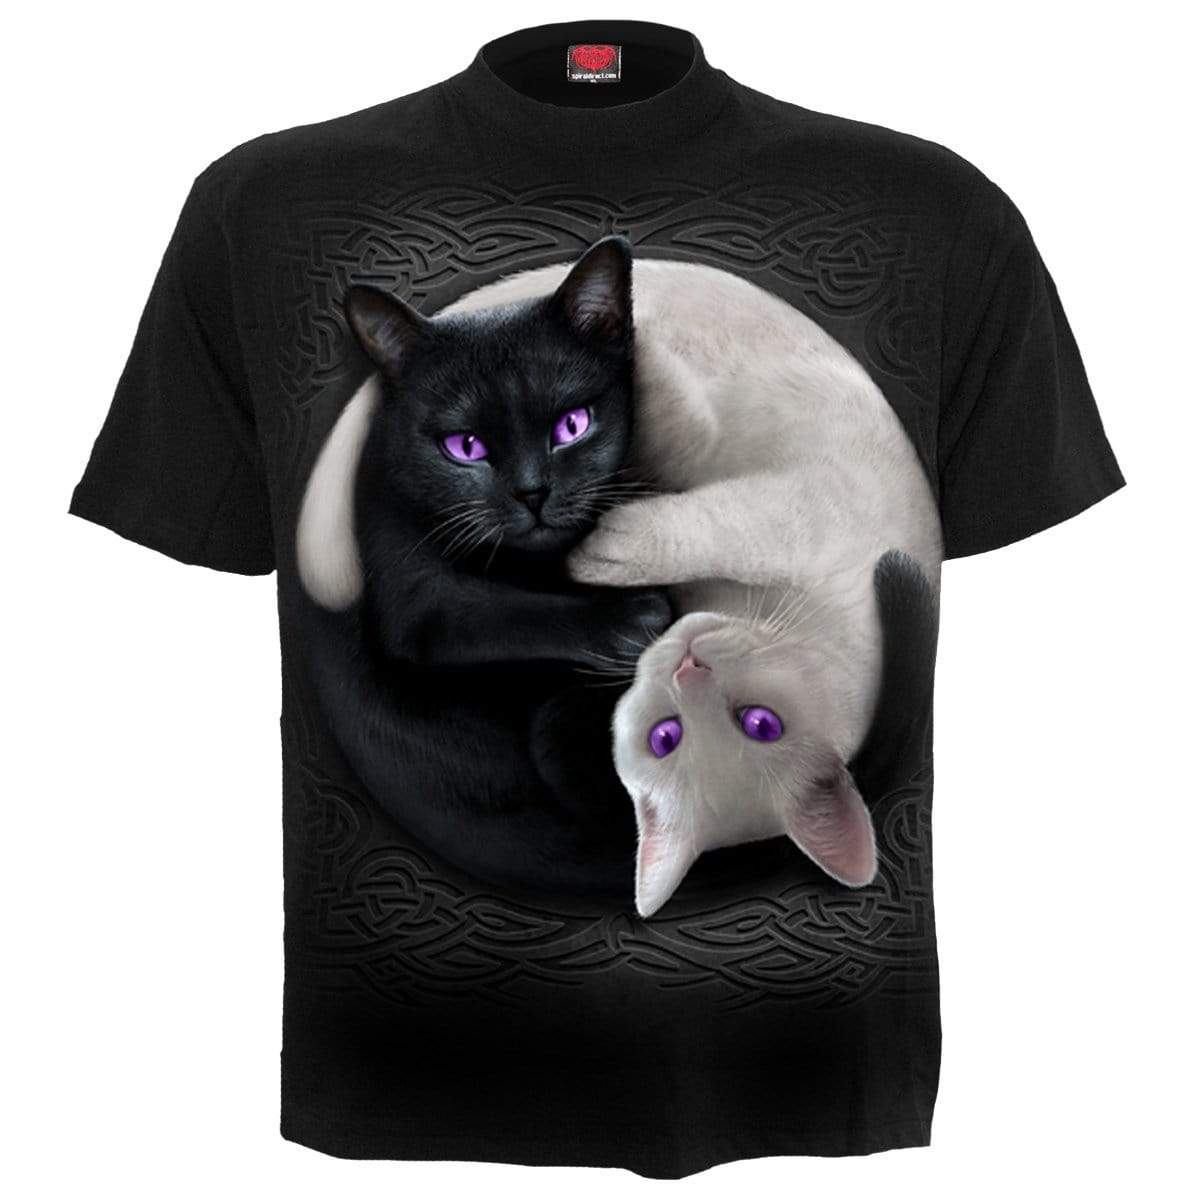 YIN YANG CATS - Front Print T-Shirt Black - Spiral USA